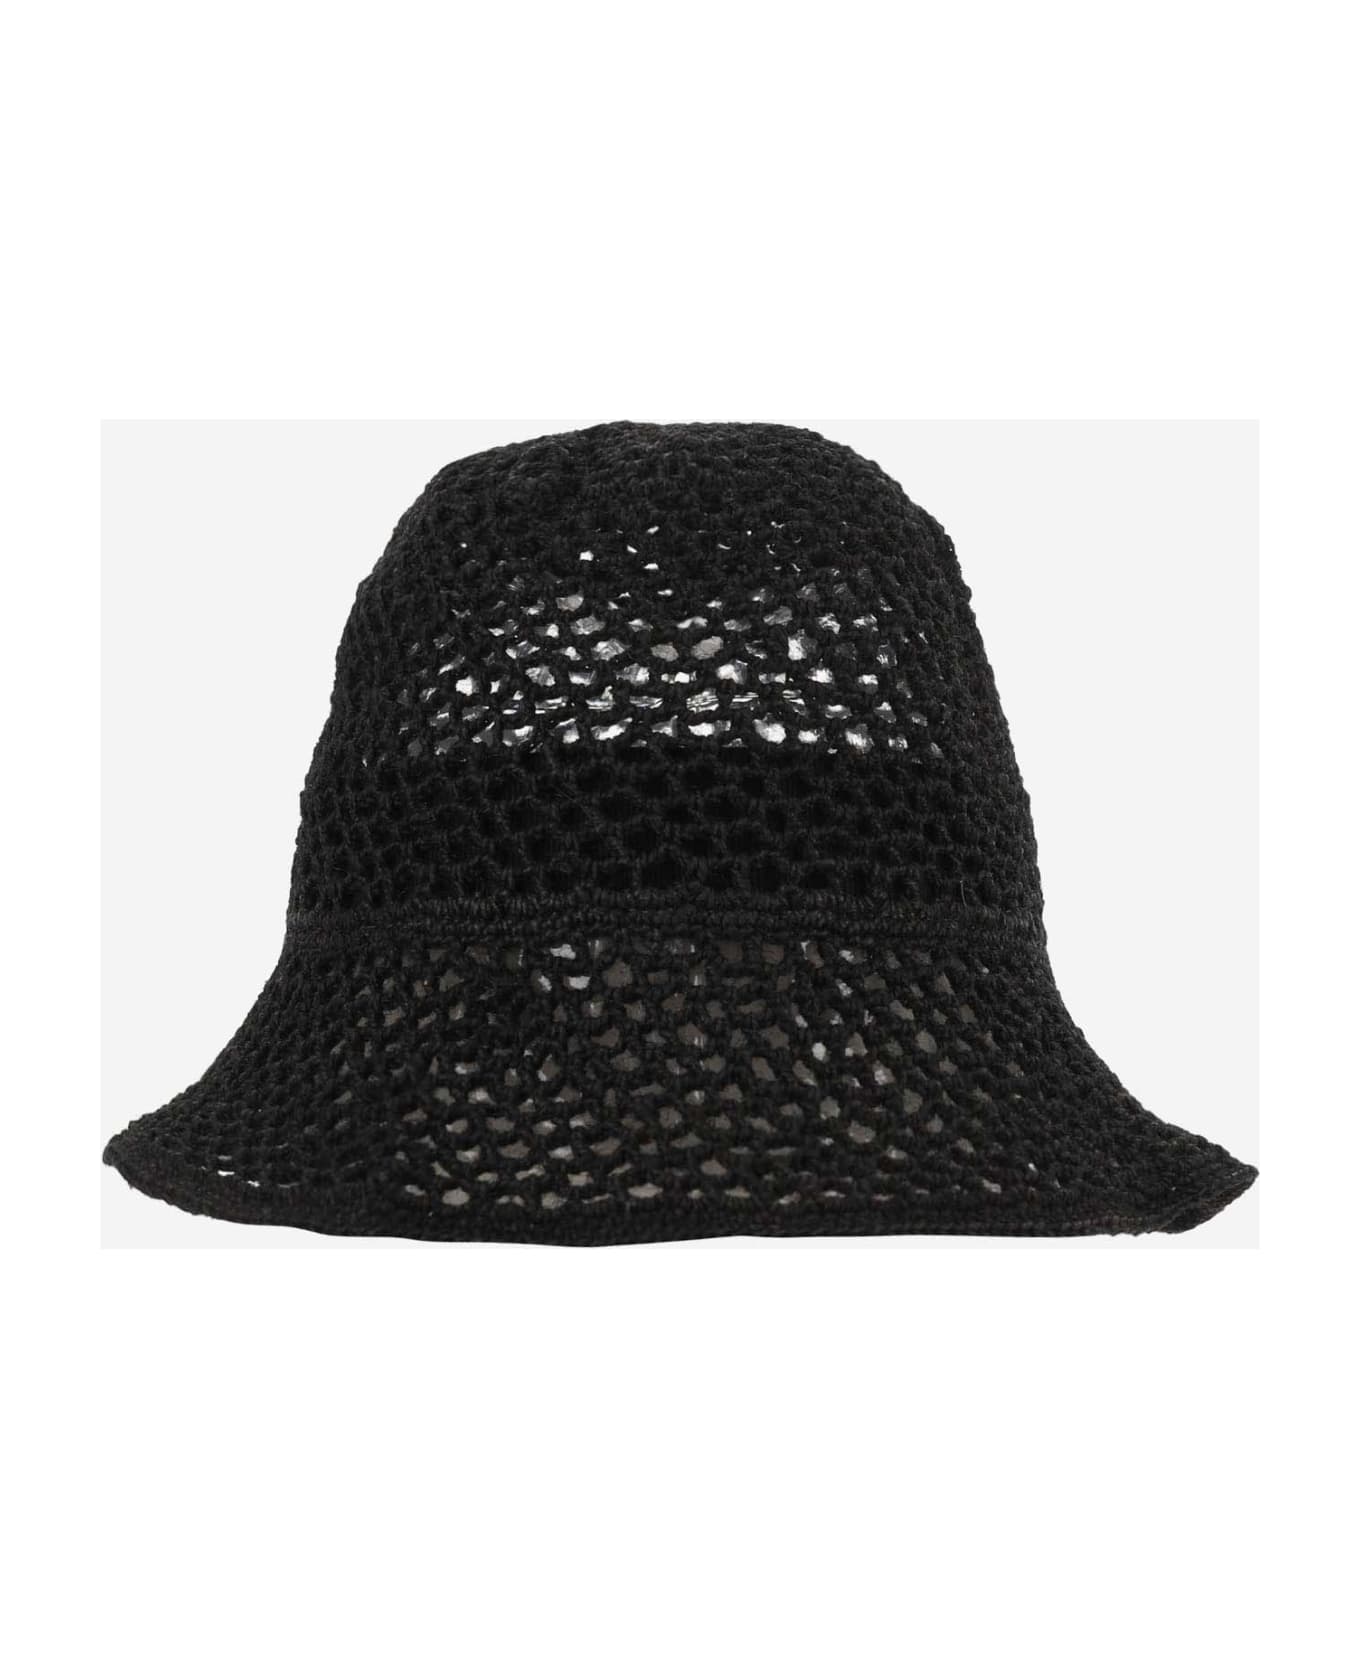 Reinhard Plank Mesh Bucket Hat - Black